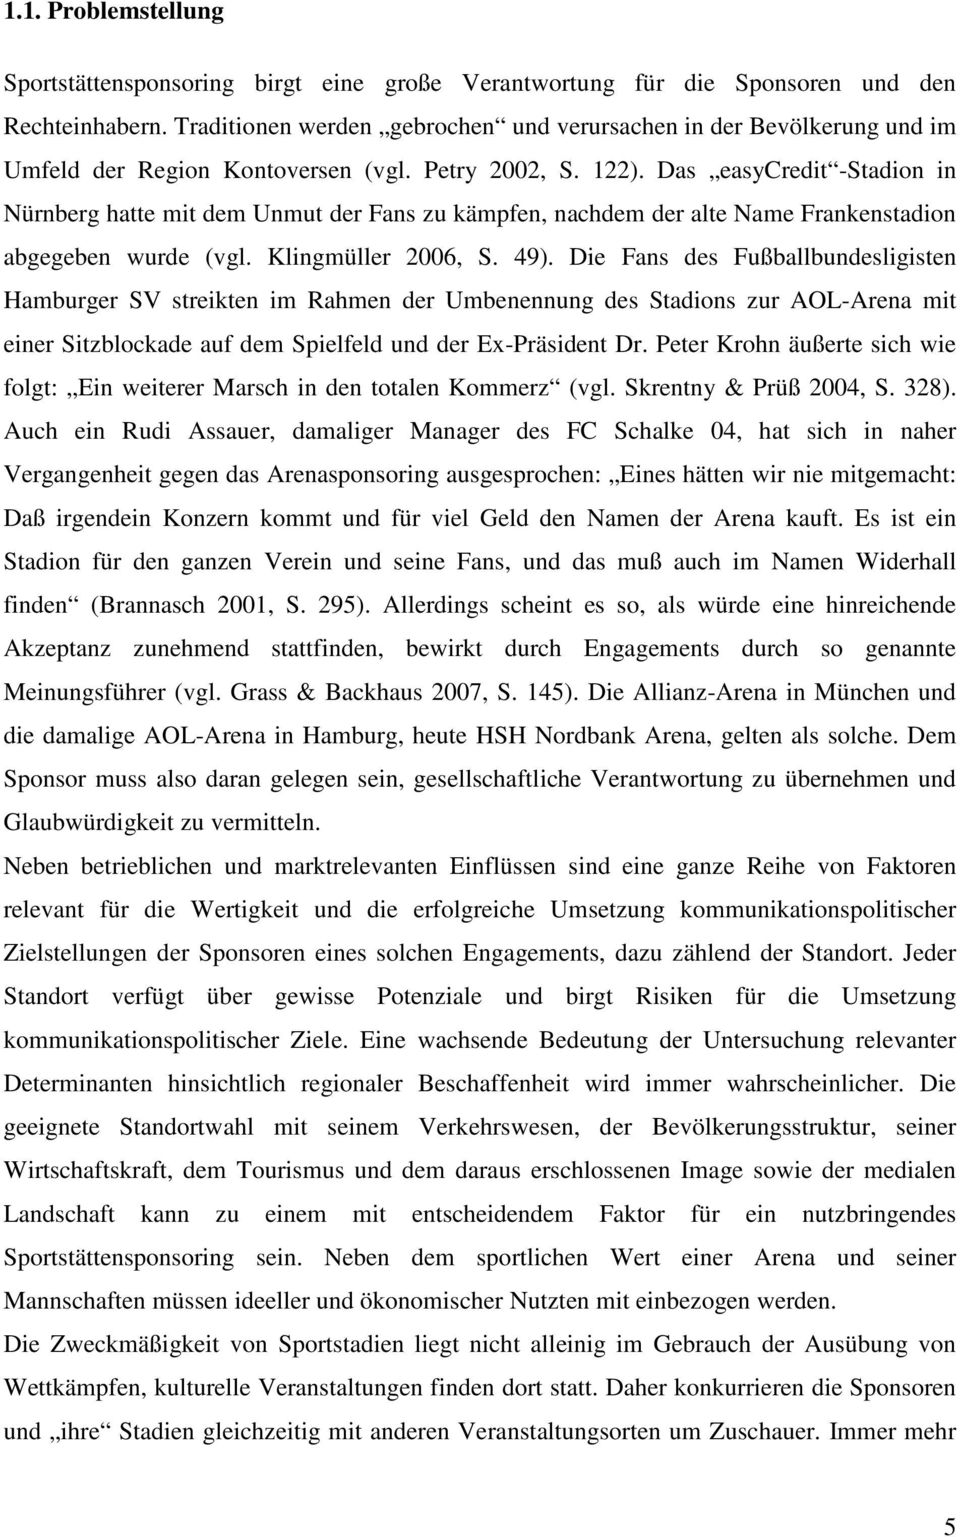 Das easycredit -Stadion in Nürnberg hatte mit dem Unmut der Fans zu kämpfen, nachdem der alte Name Frankenstadion abgegeben wurde (vgl. Klingmüller 2006, S. 49).